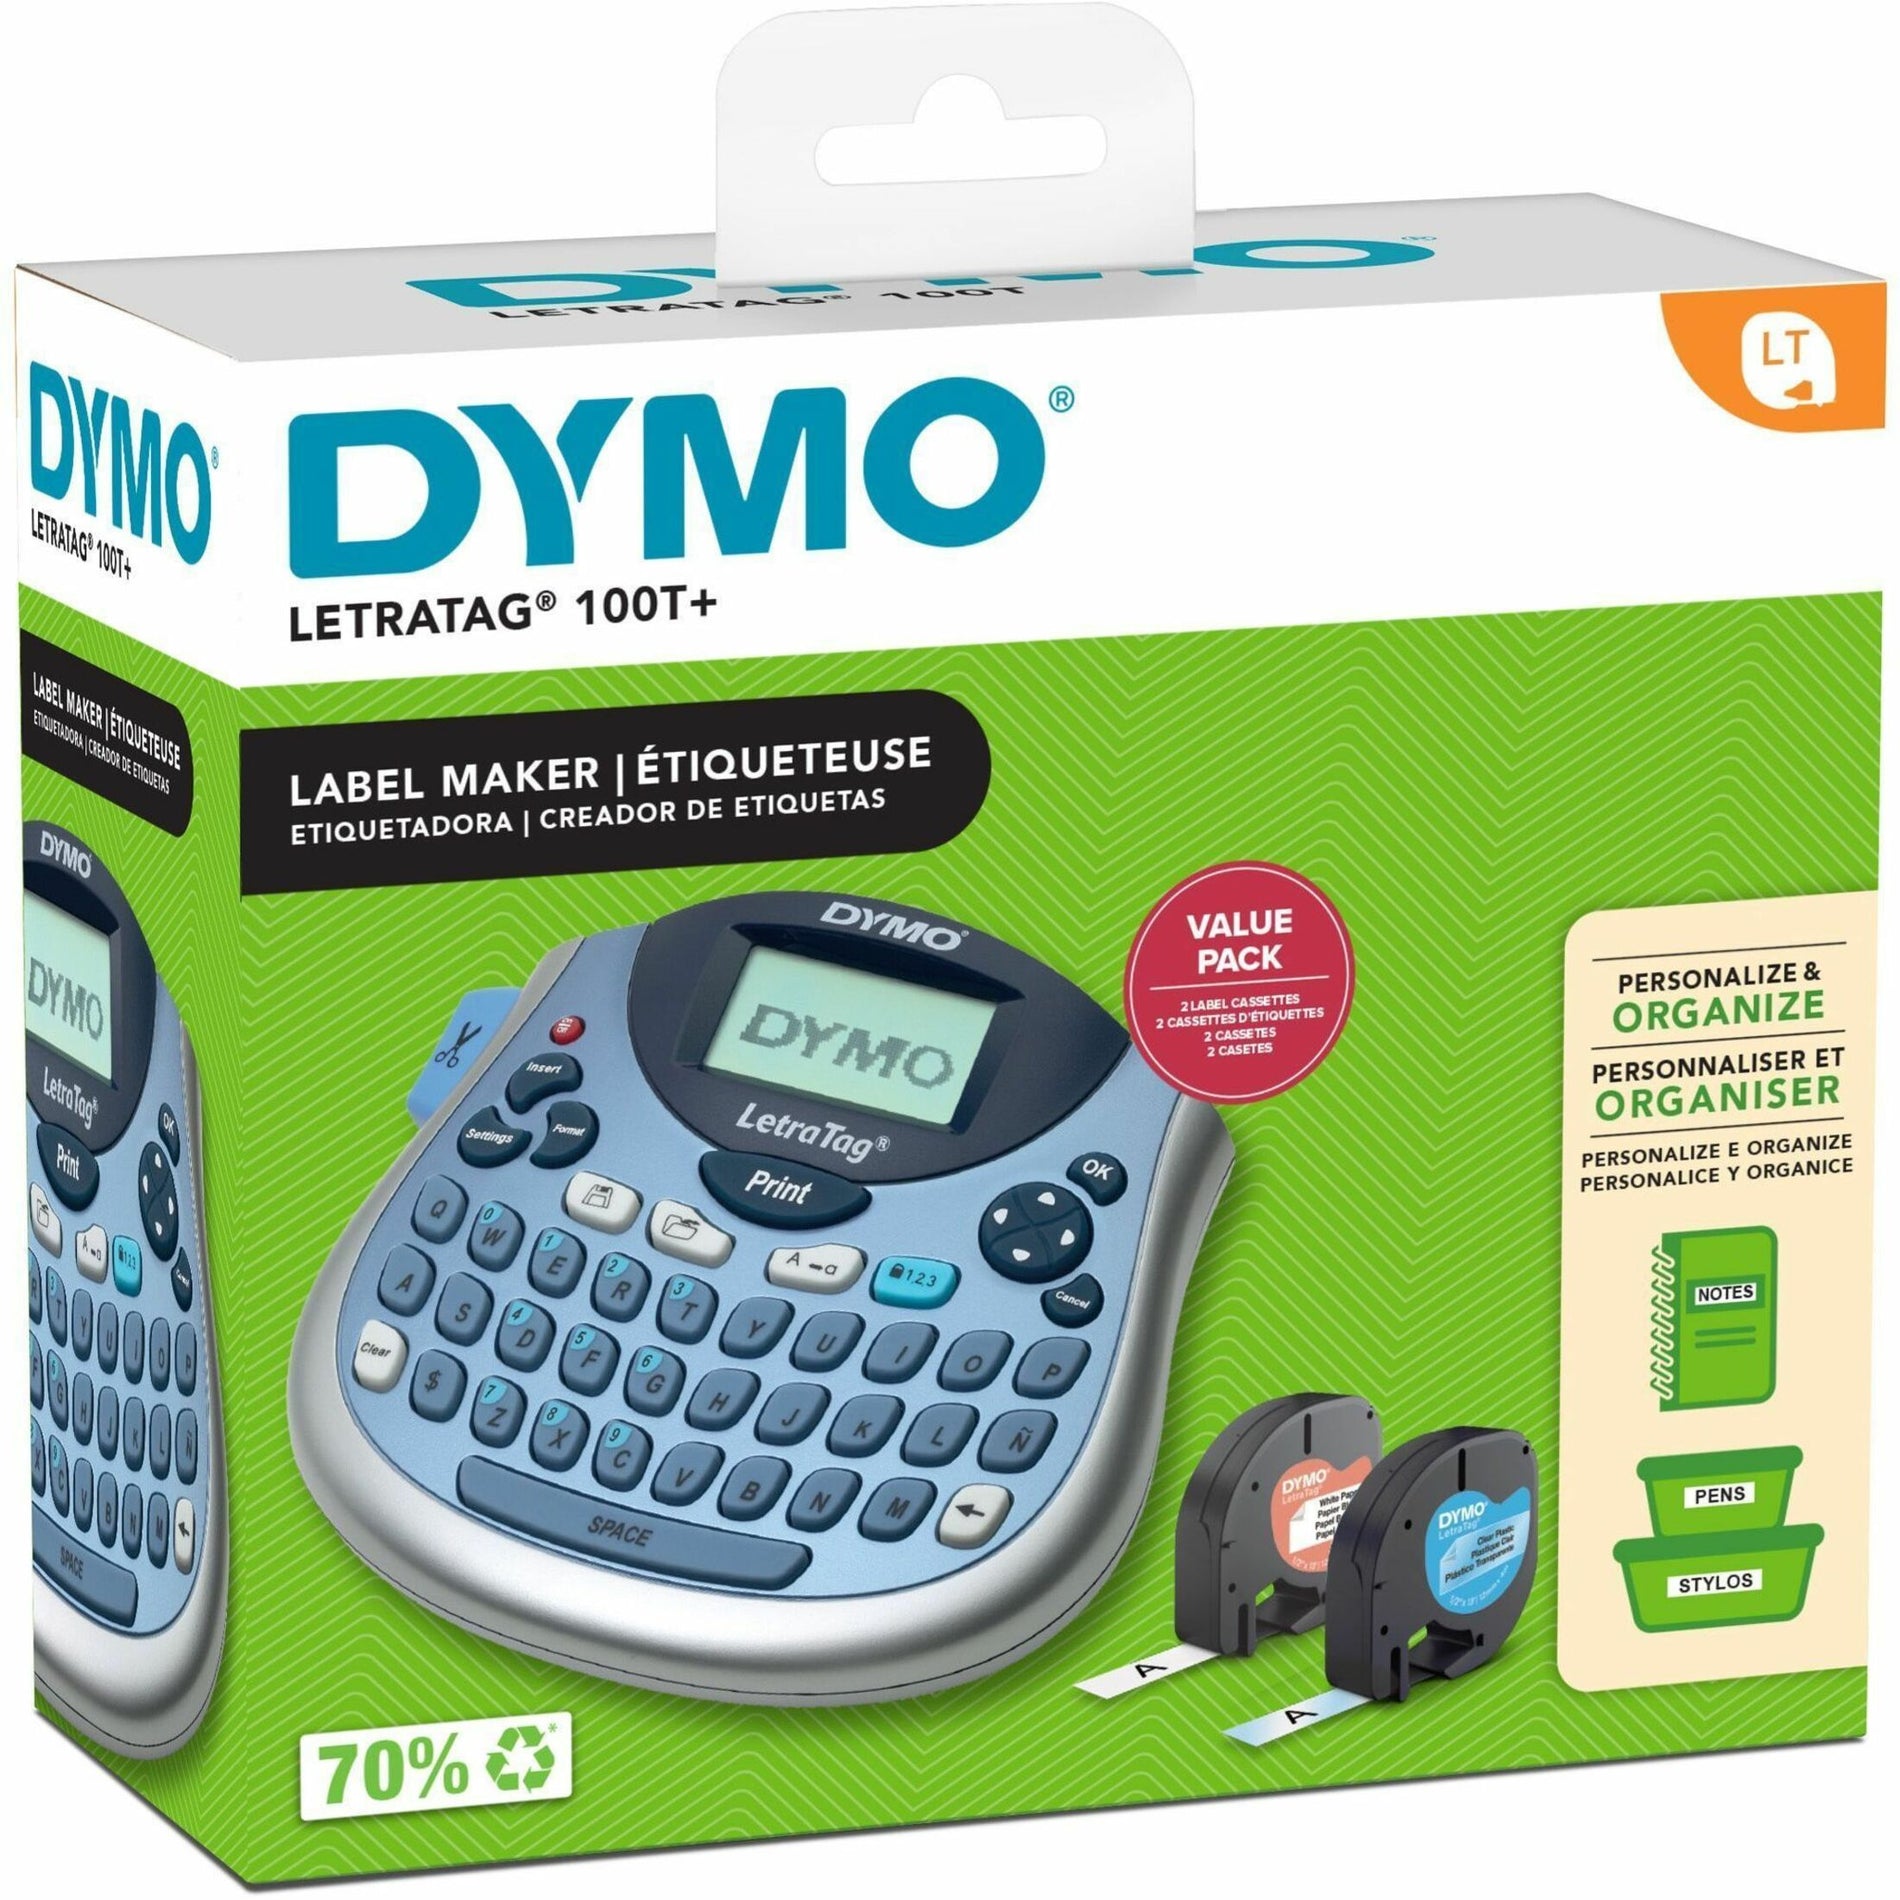 Dymo 2174540 LetraTag 100T Label Maker, Handheld Electronic Label Maker